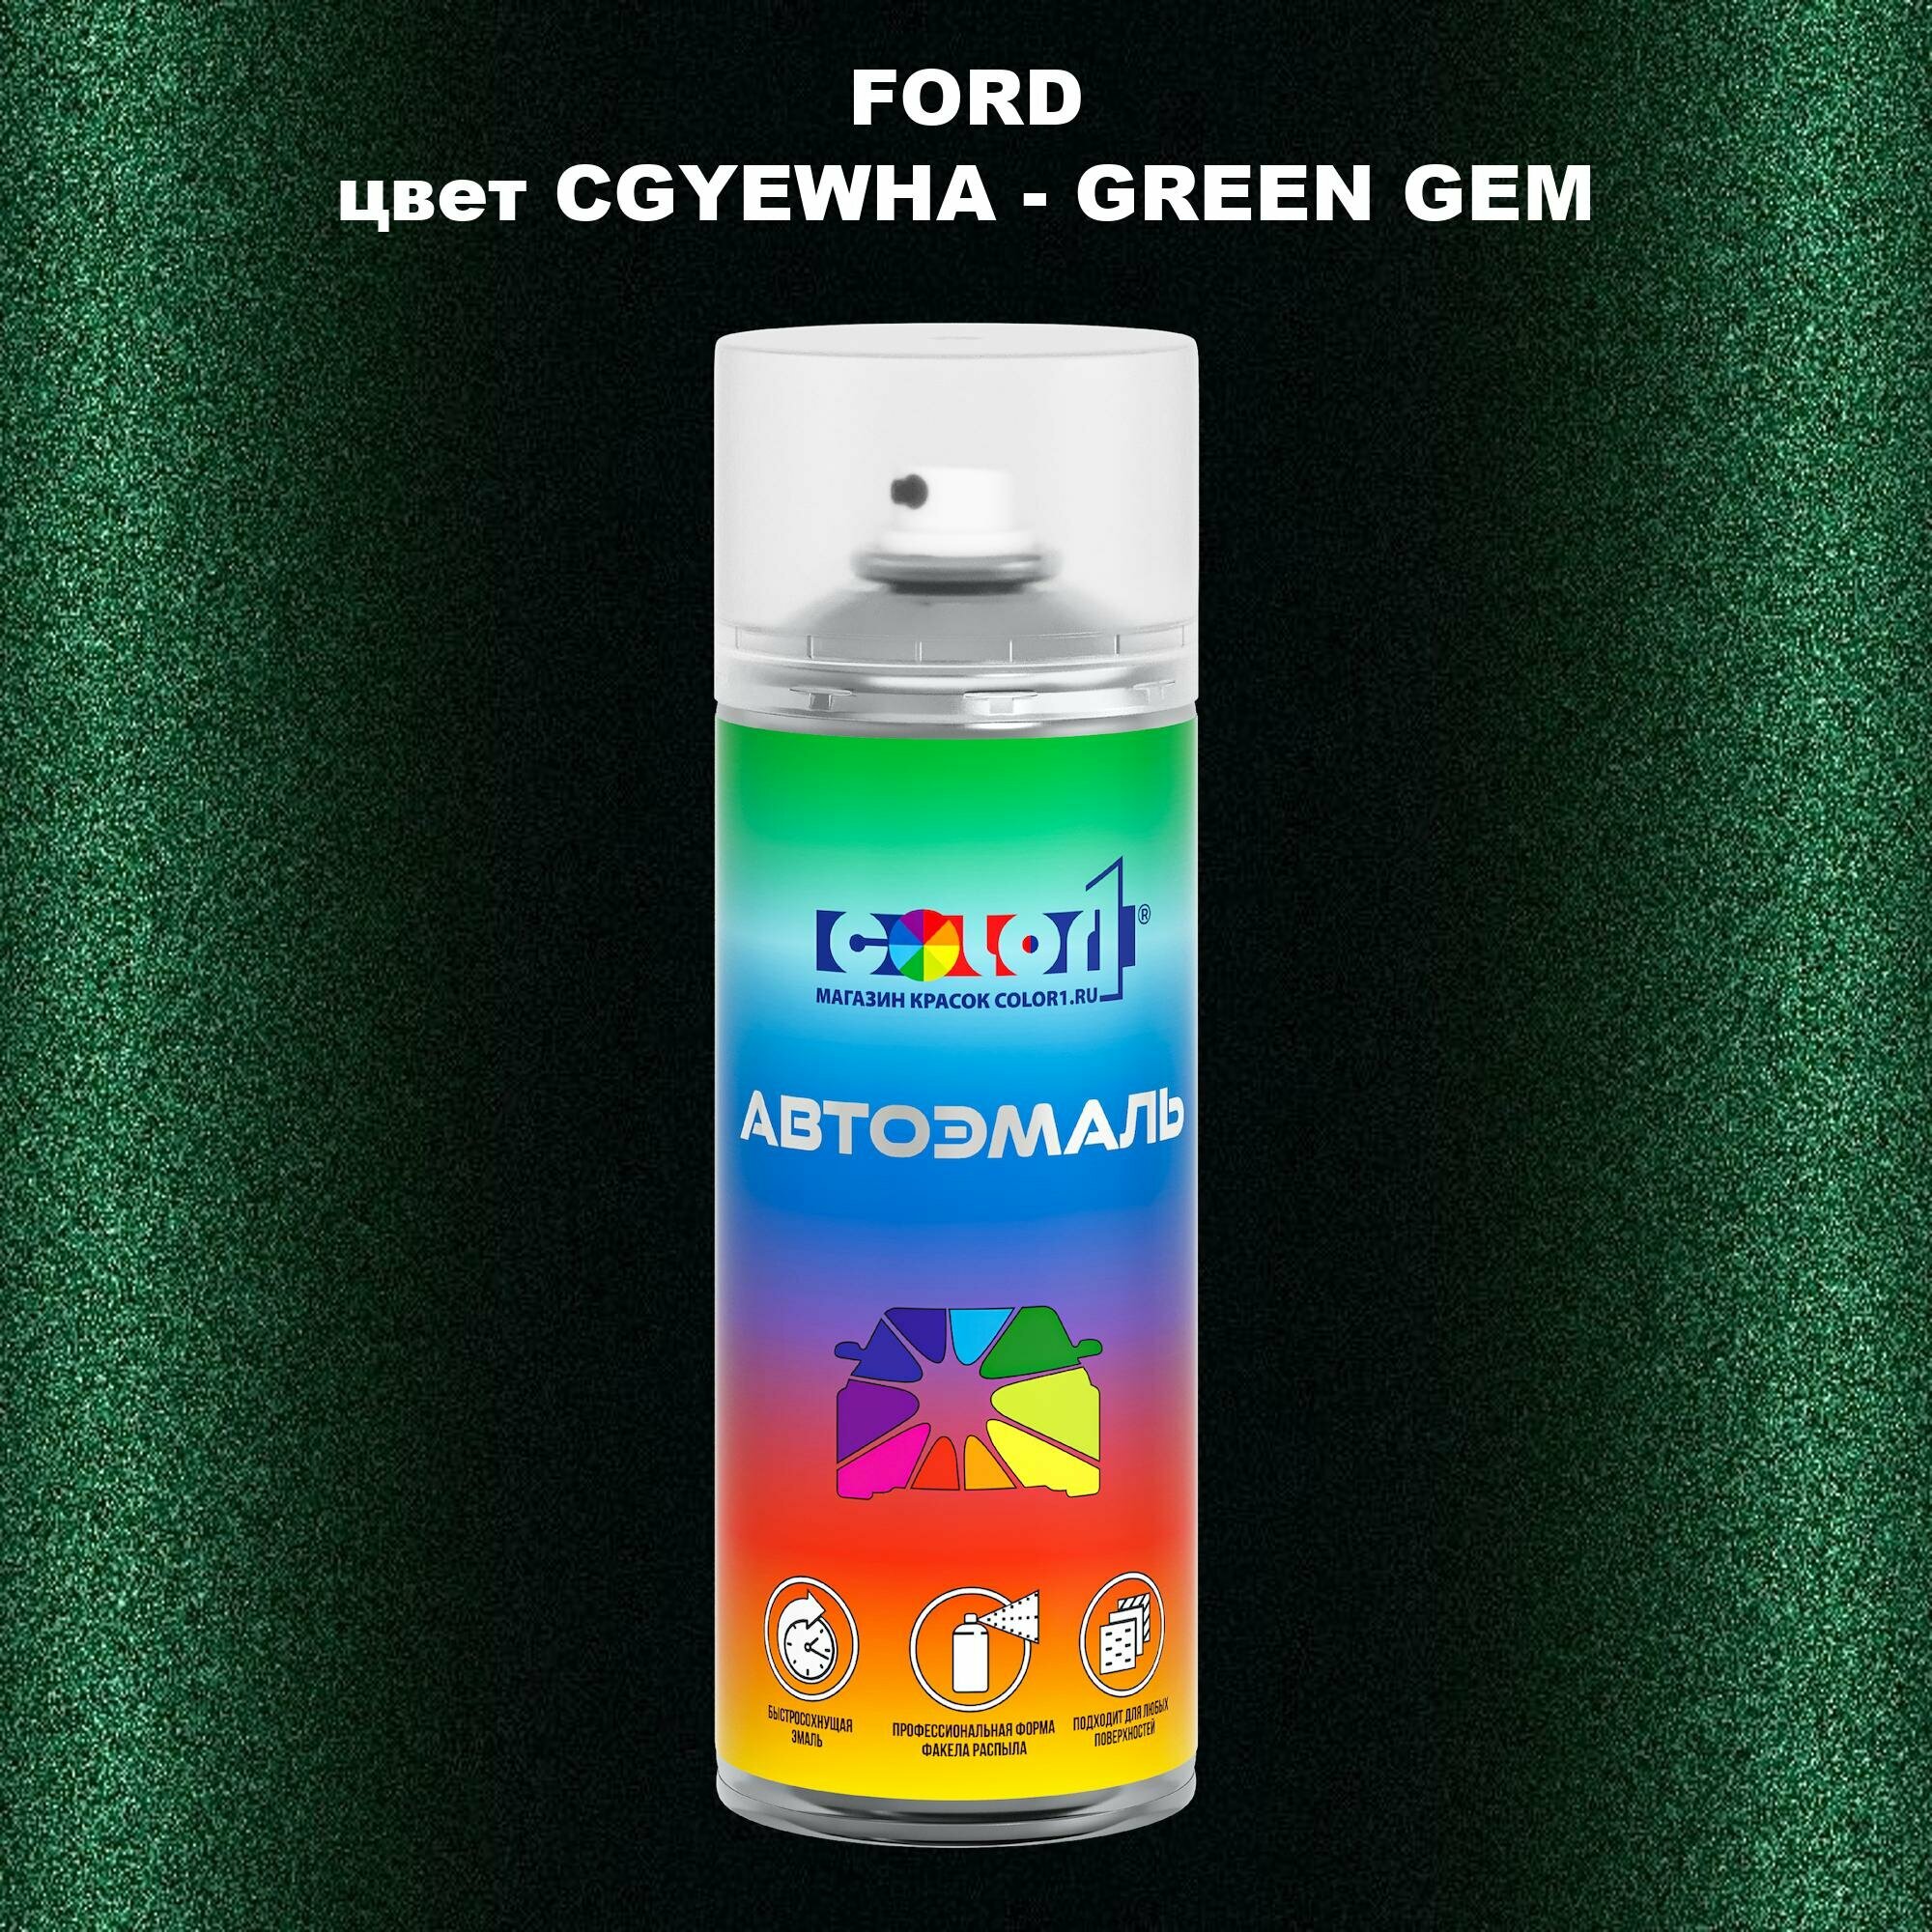 Аэрозольная краска COLOR1 для FORD, цвет CGYEWHA - GREEN GEM